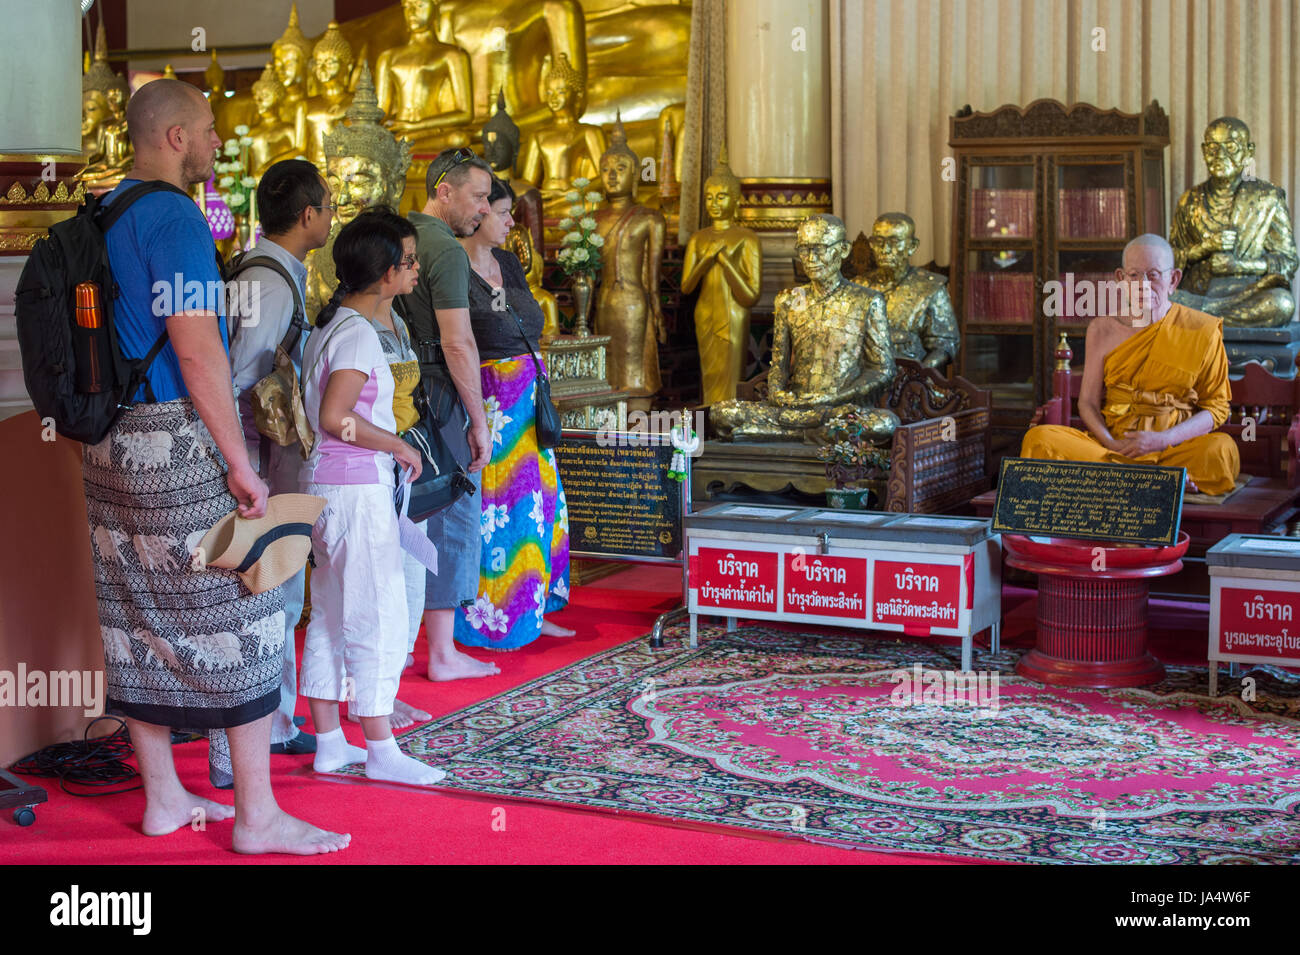 Ai turisti di ammirare una scultura di cera di un monaco di Wat Phra Singh, che è uno dei più famosi templi buddisti in Chiang Mai. Foto Stock